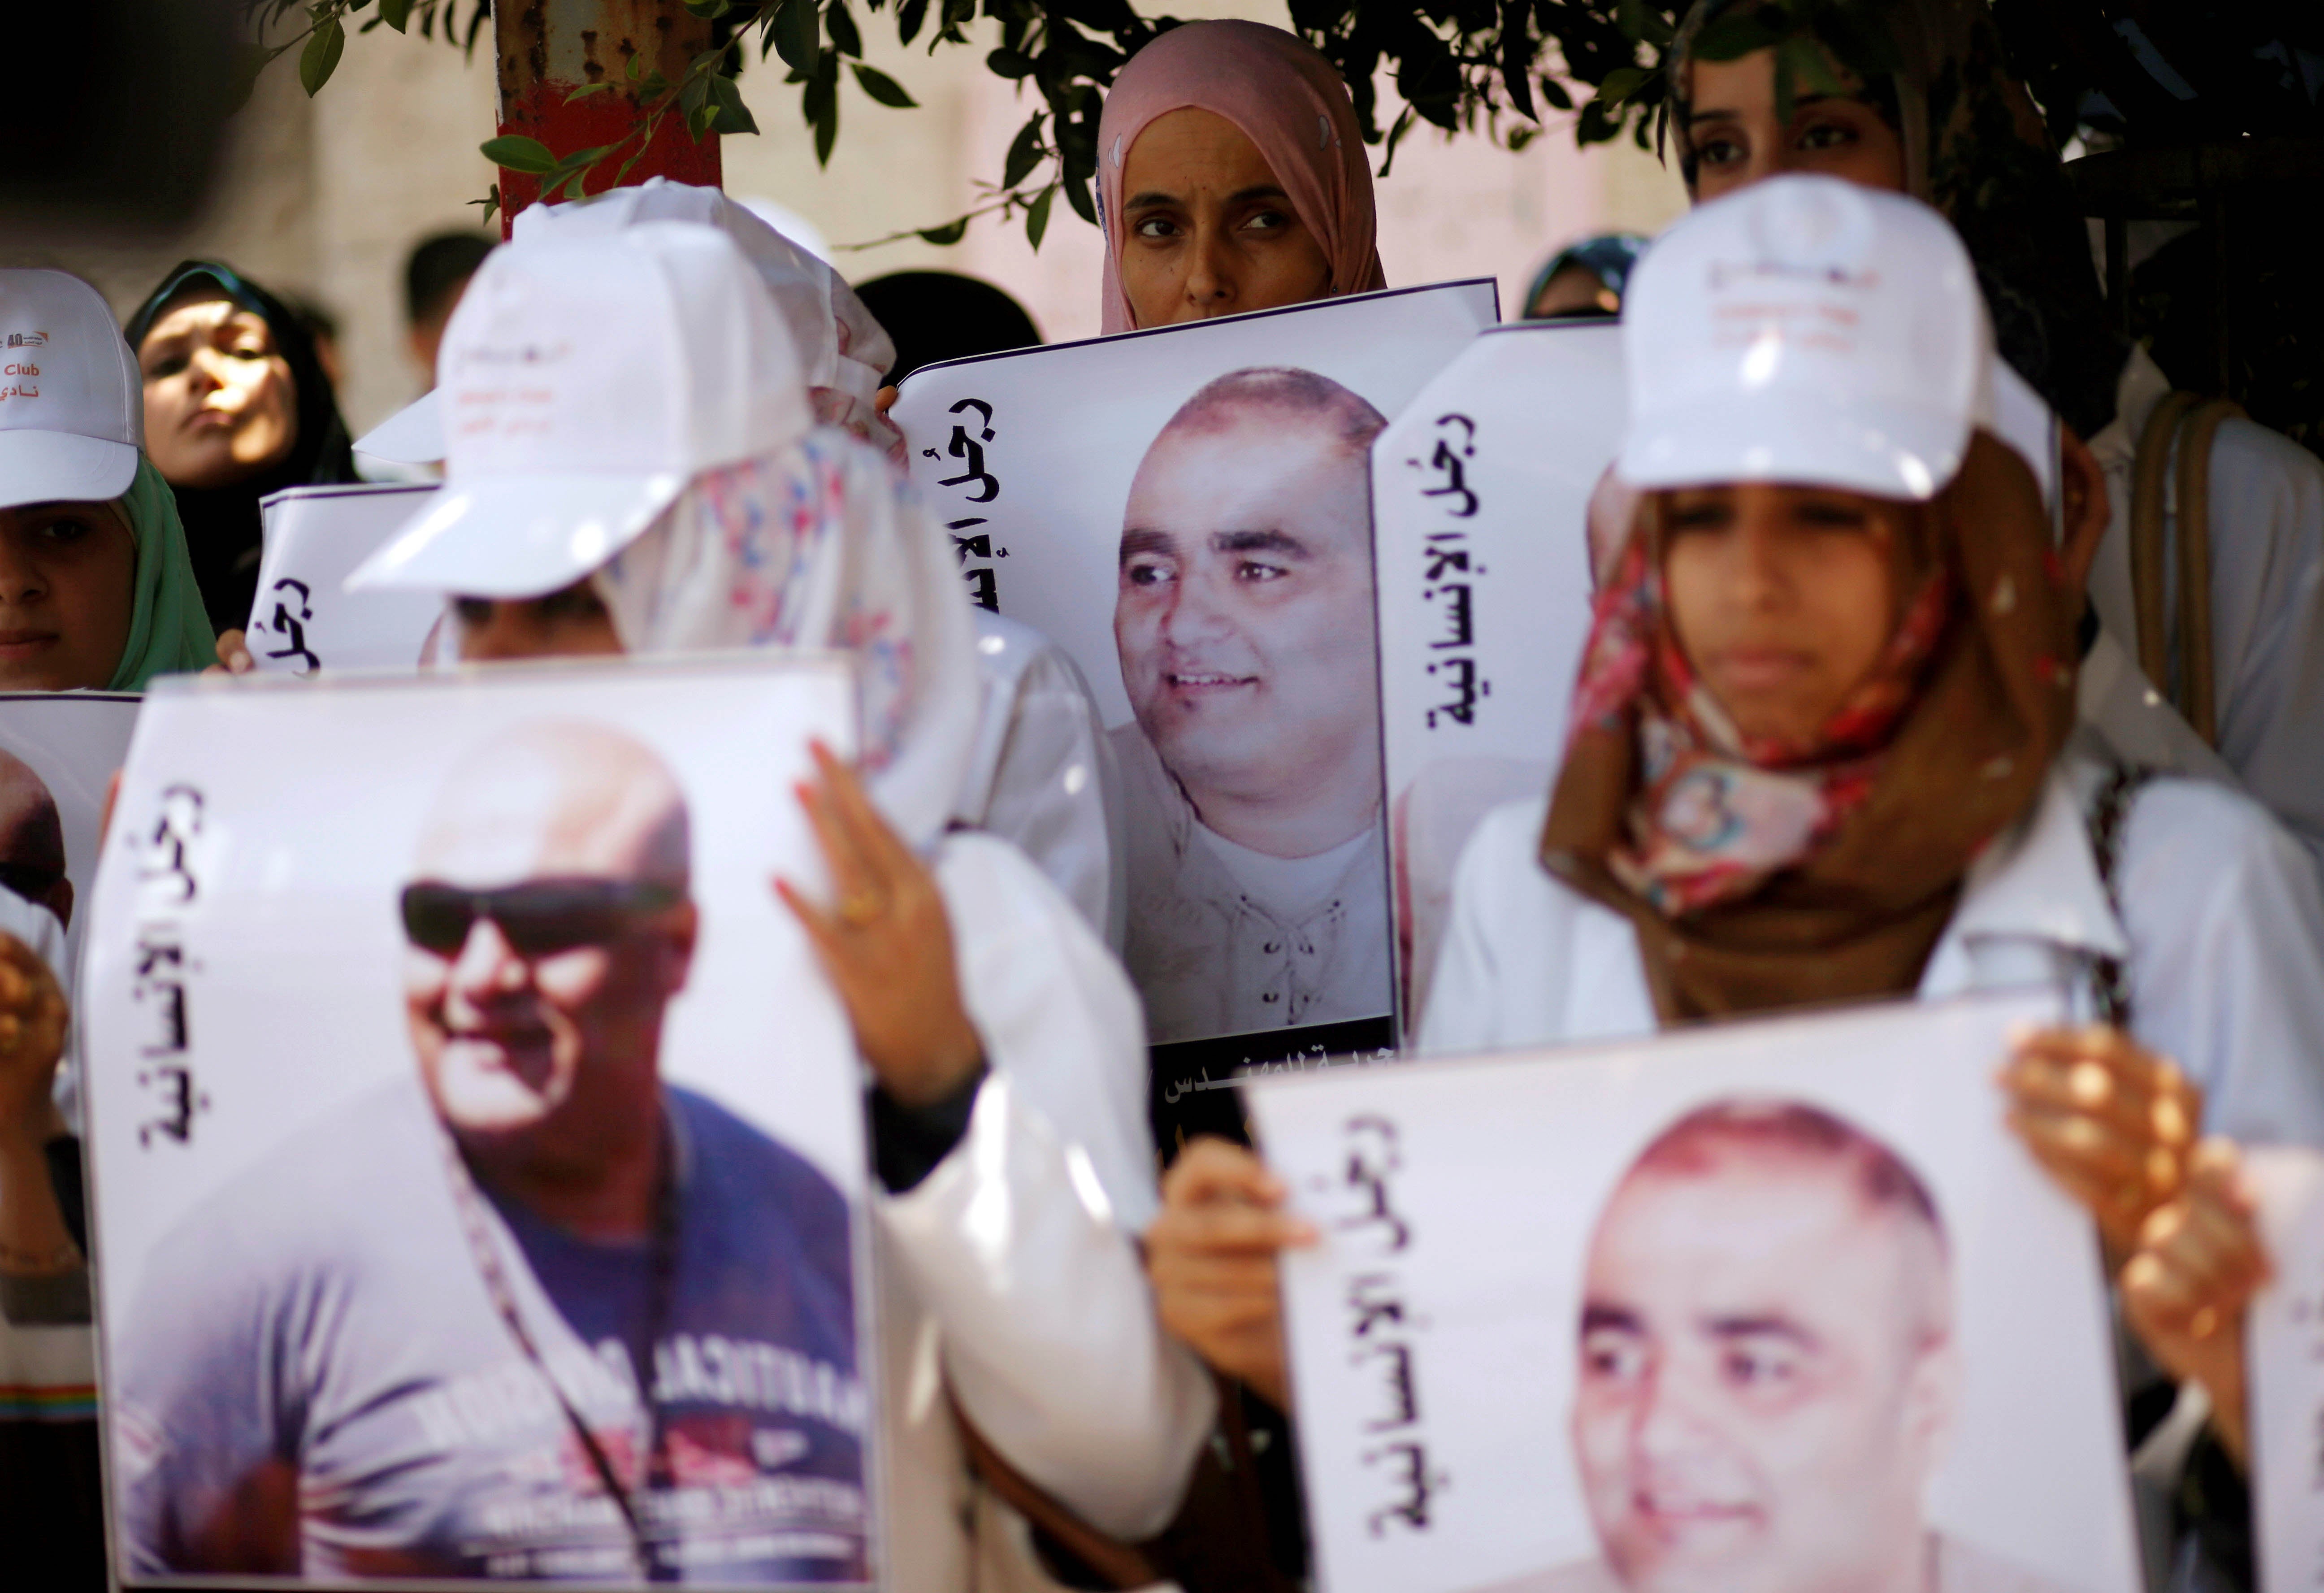 متظاهرون فلسطينيون يحملون صور محمد الحلبي، وهو موظف إغاثة في غزة تحتجزه إسرائيل منذ يونيو/حزيران 2016 بدون إدانته بجريمة، خلال مظاهرة تضامن مع الحلبي، مدينة غزة، 7 أغسطس/آب 2016.  